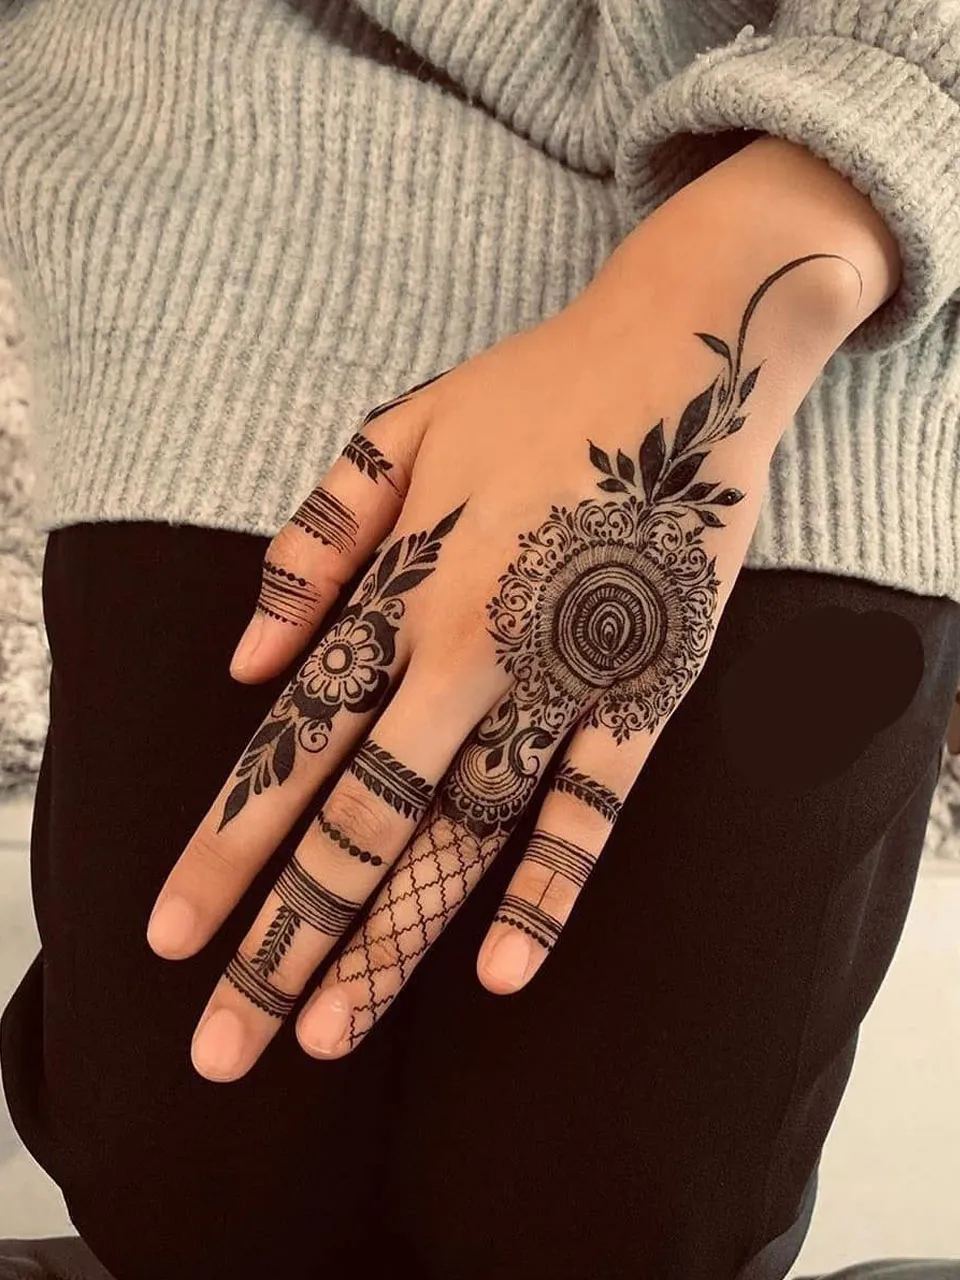 करवाचौथ पर इन ट्रेंडिंग मेहंदी डिजाइन को बनवाने की होड़, थीम के साथ सजाएं  हाथ, मेकर्स भी दे रहे ऑफर - Trending mehndi designs for Karwa Chauth  decorate hands with theme makers